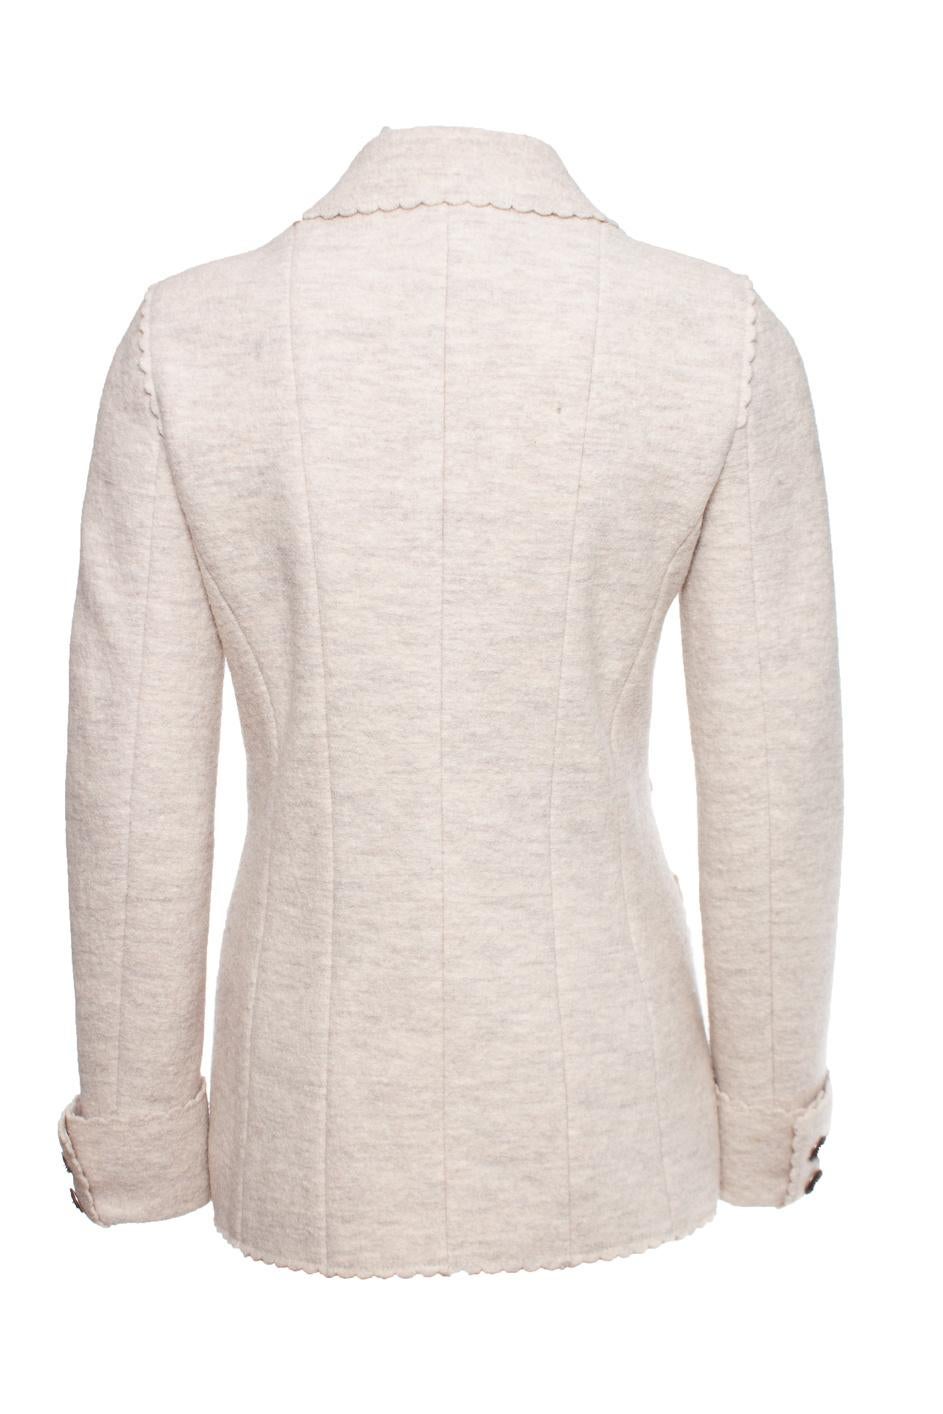 Chanel 9K$ Runway Paris / Dallas Beige Tweed Jacket 14